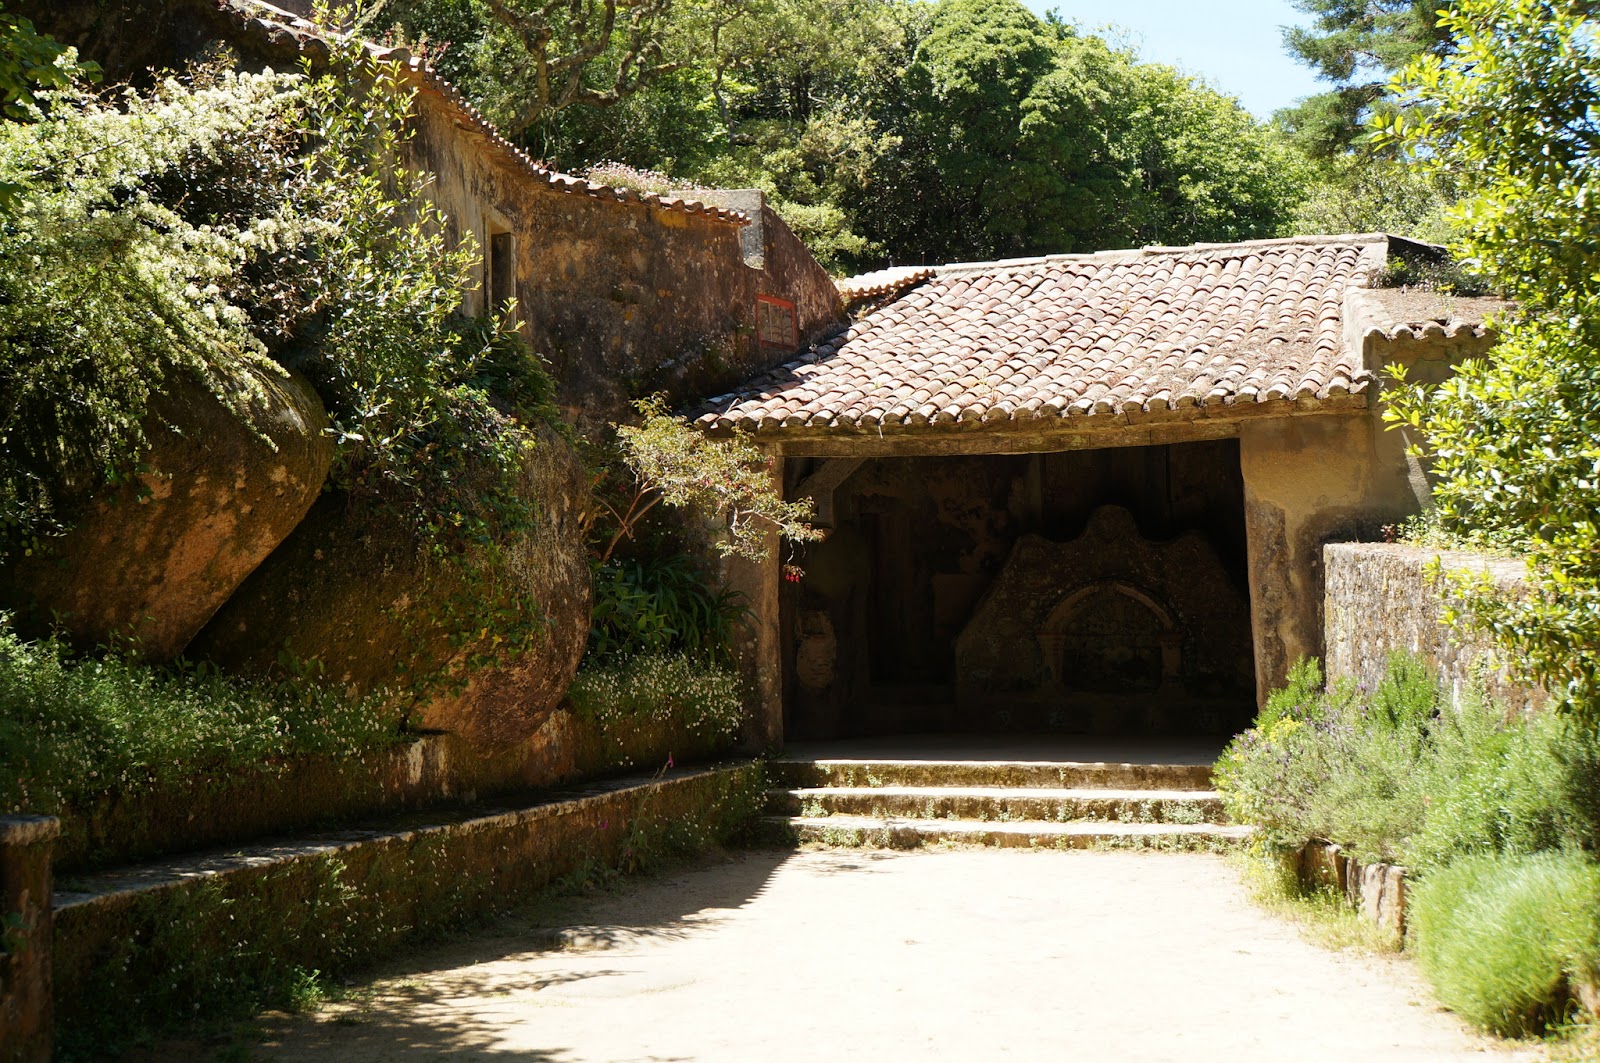 Convento dos Capuchos - Portugal